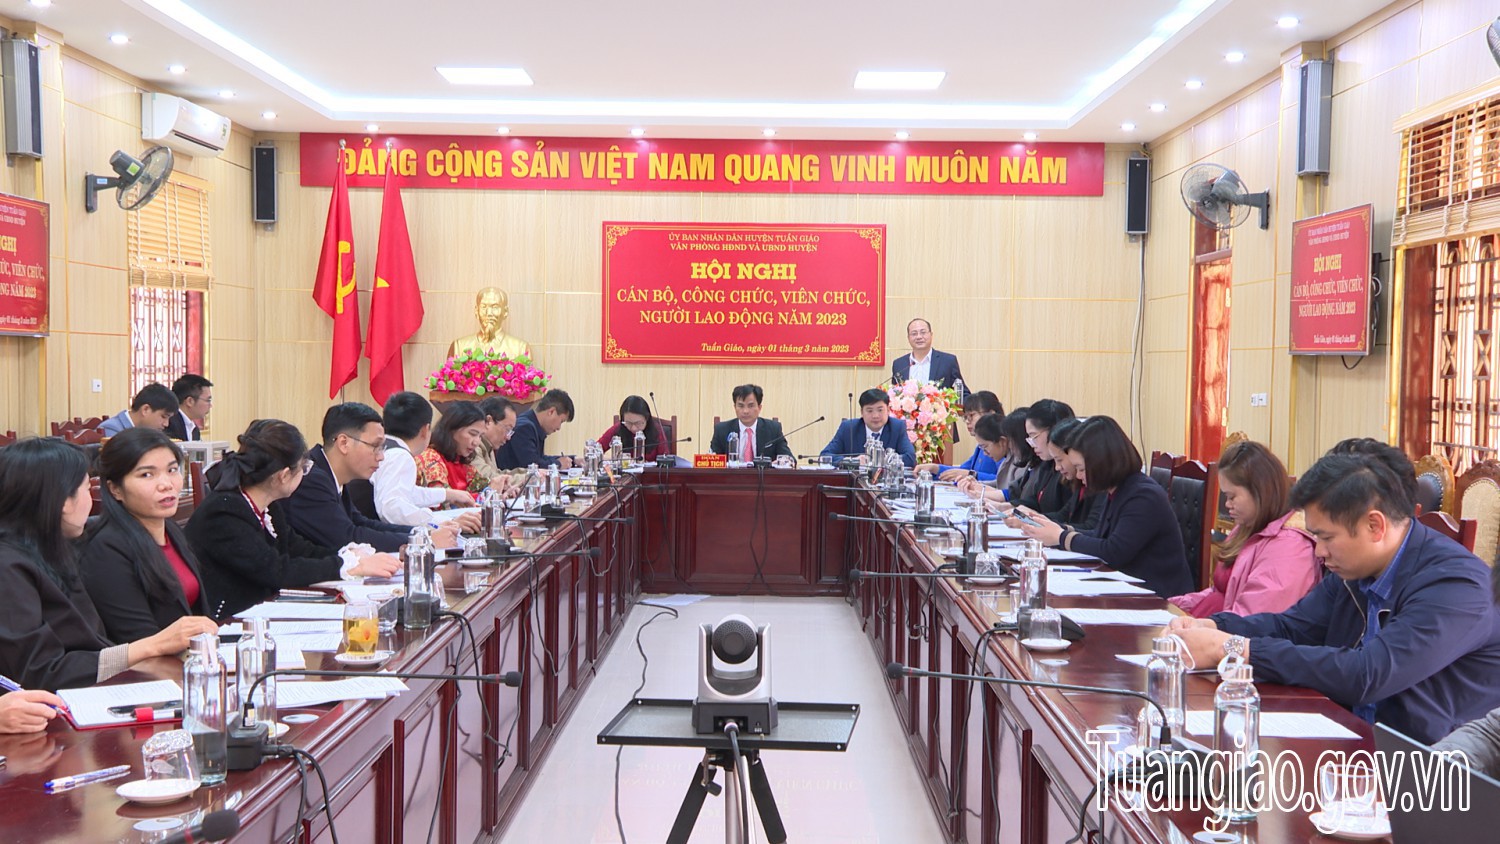 Văn phòng HĐND & UBND huyện Tuần Giáo tổ chức Hội nghị cán bộ, công chức, viên chức, người lao động năm 2023